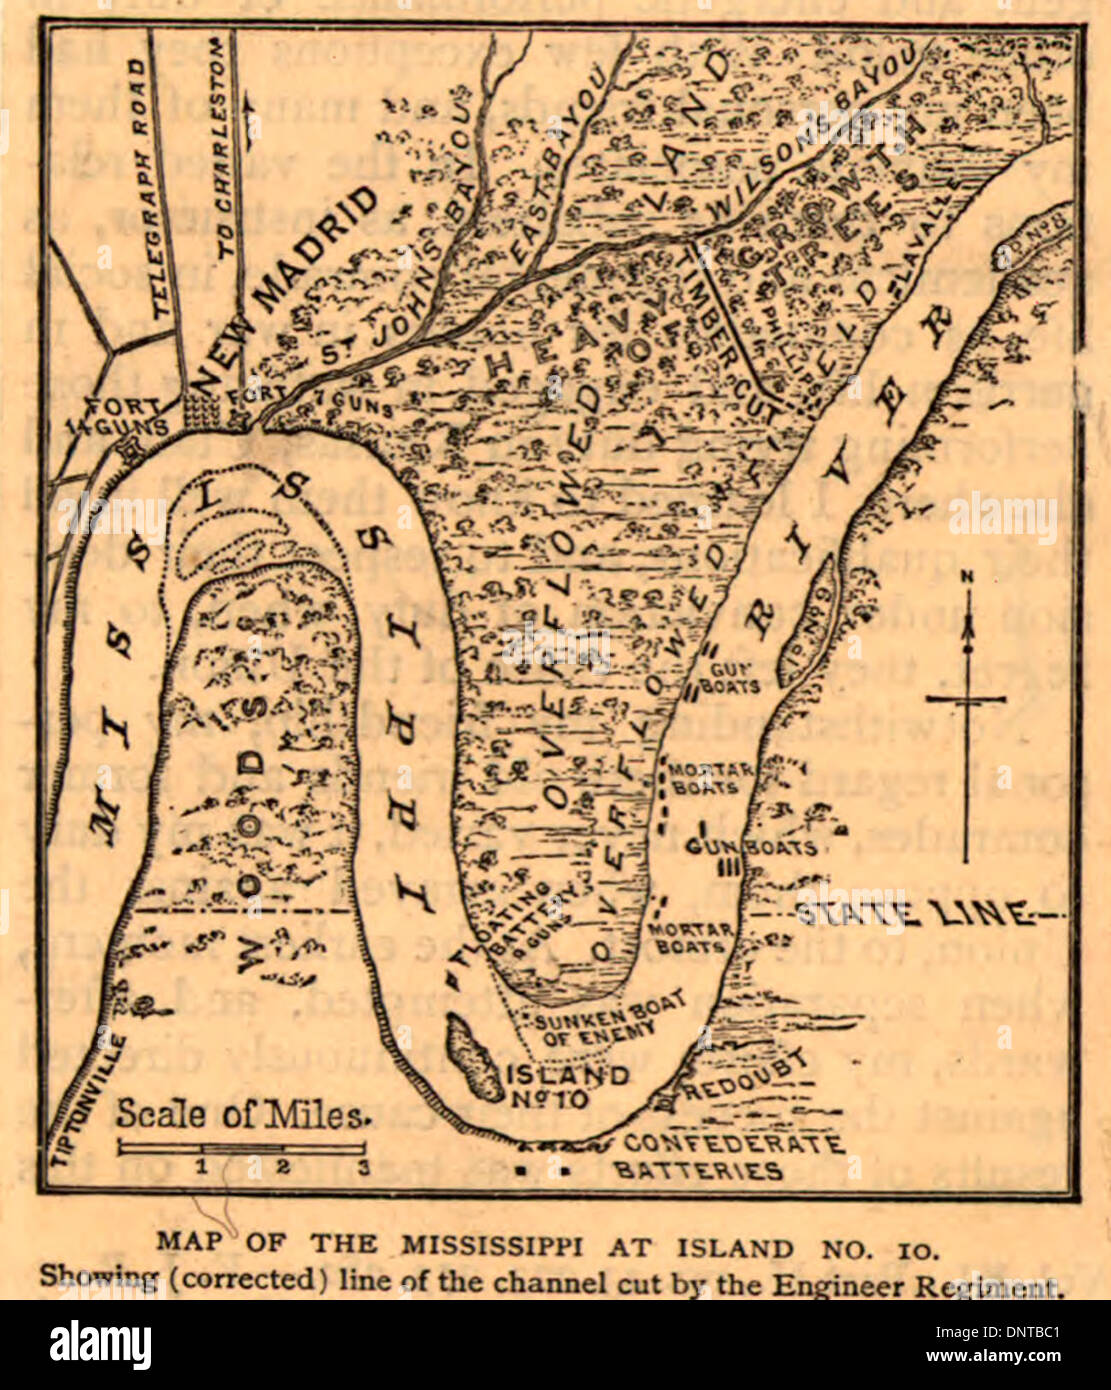 Mapa de la isla en Mississippi no. 10. Mostrando (corregido) de la línea del canal cortado por el Regimiento de Ingeniero. 1862 guerra civil EE.UU. Foto de stock